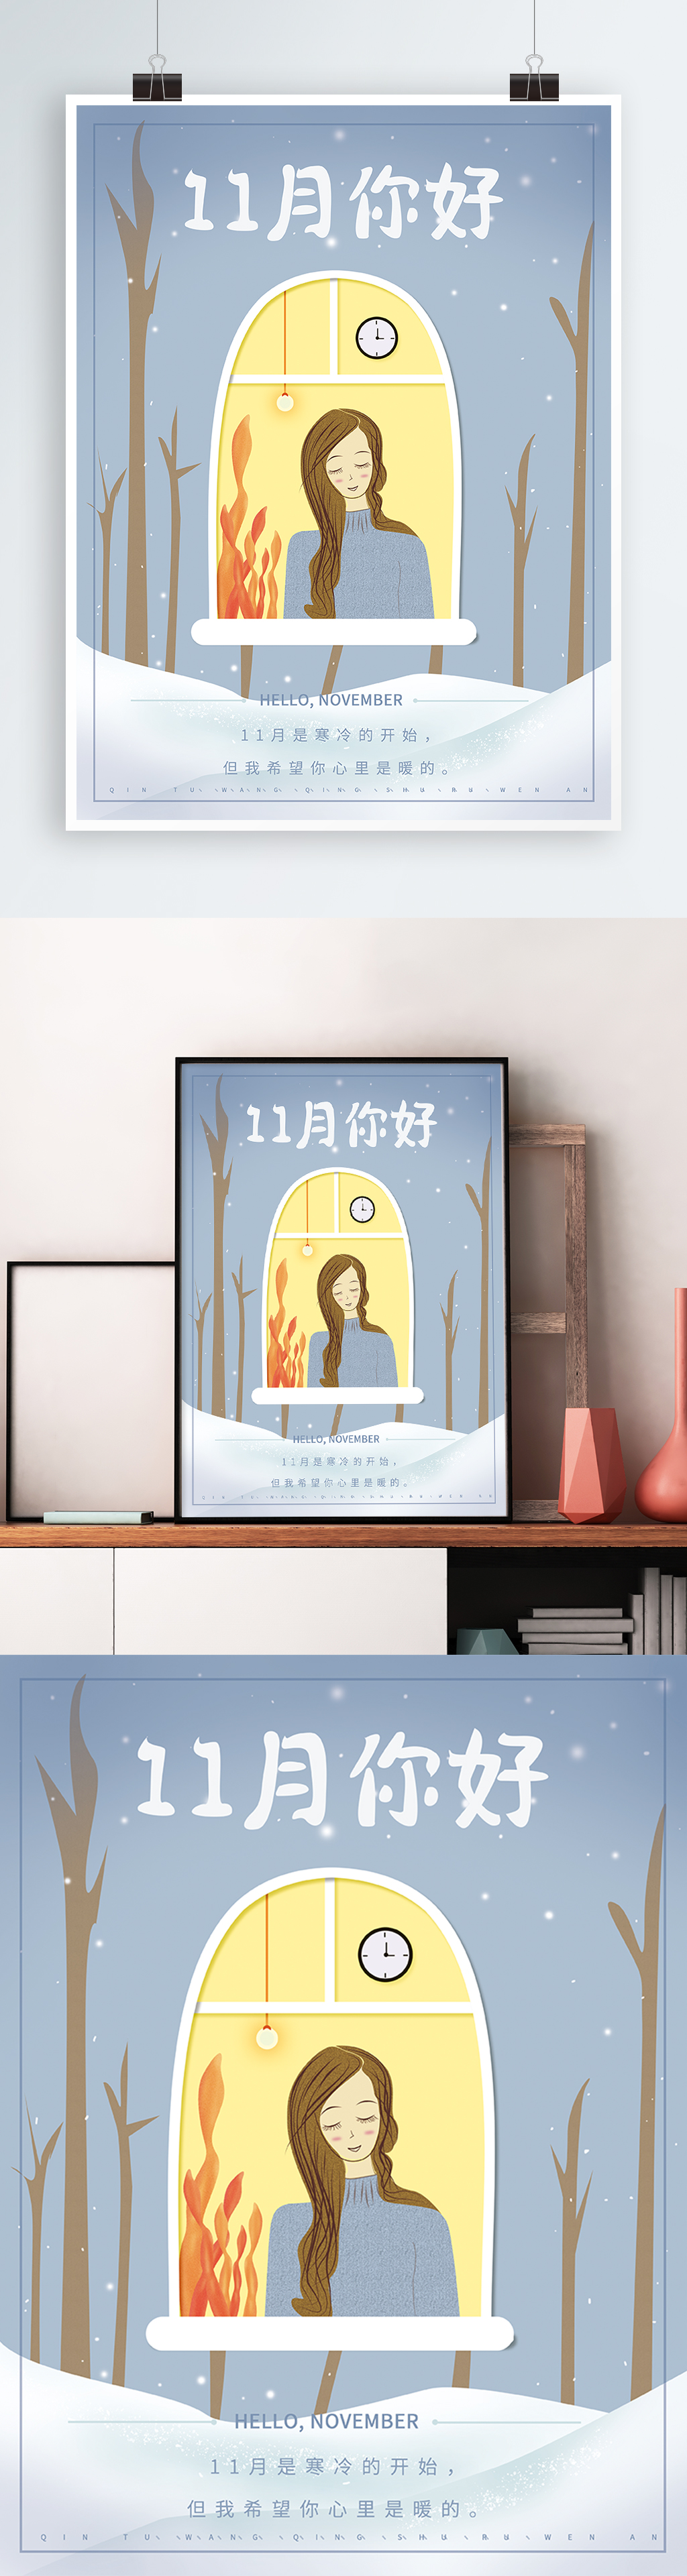 11月你好手绘插画人物小清新节日海报图片